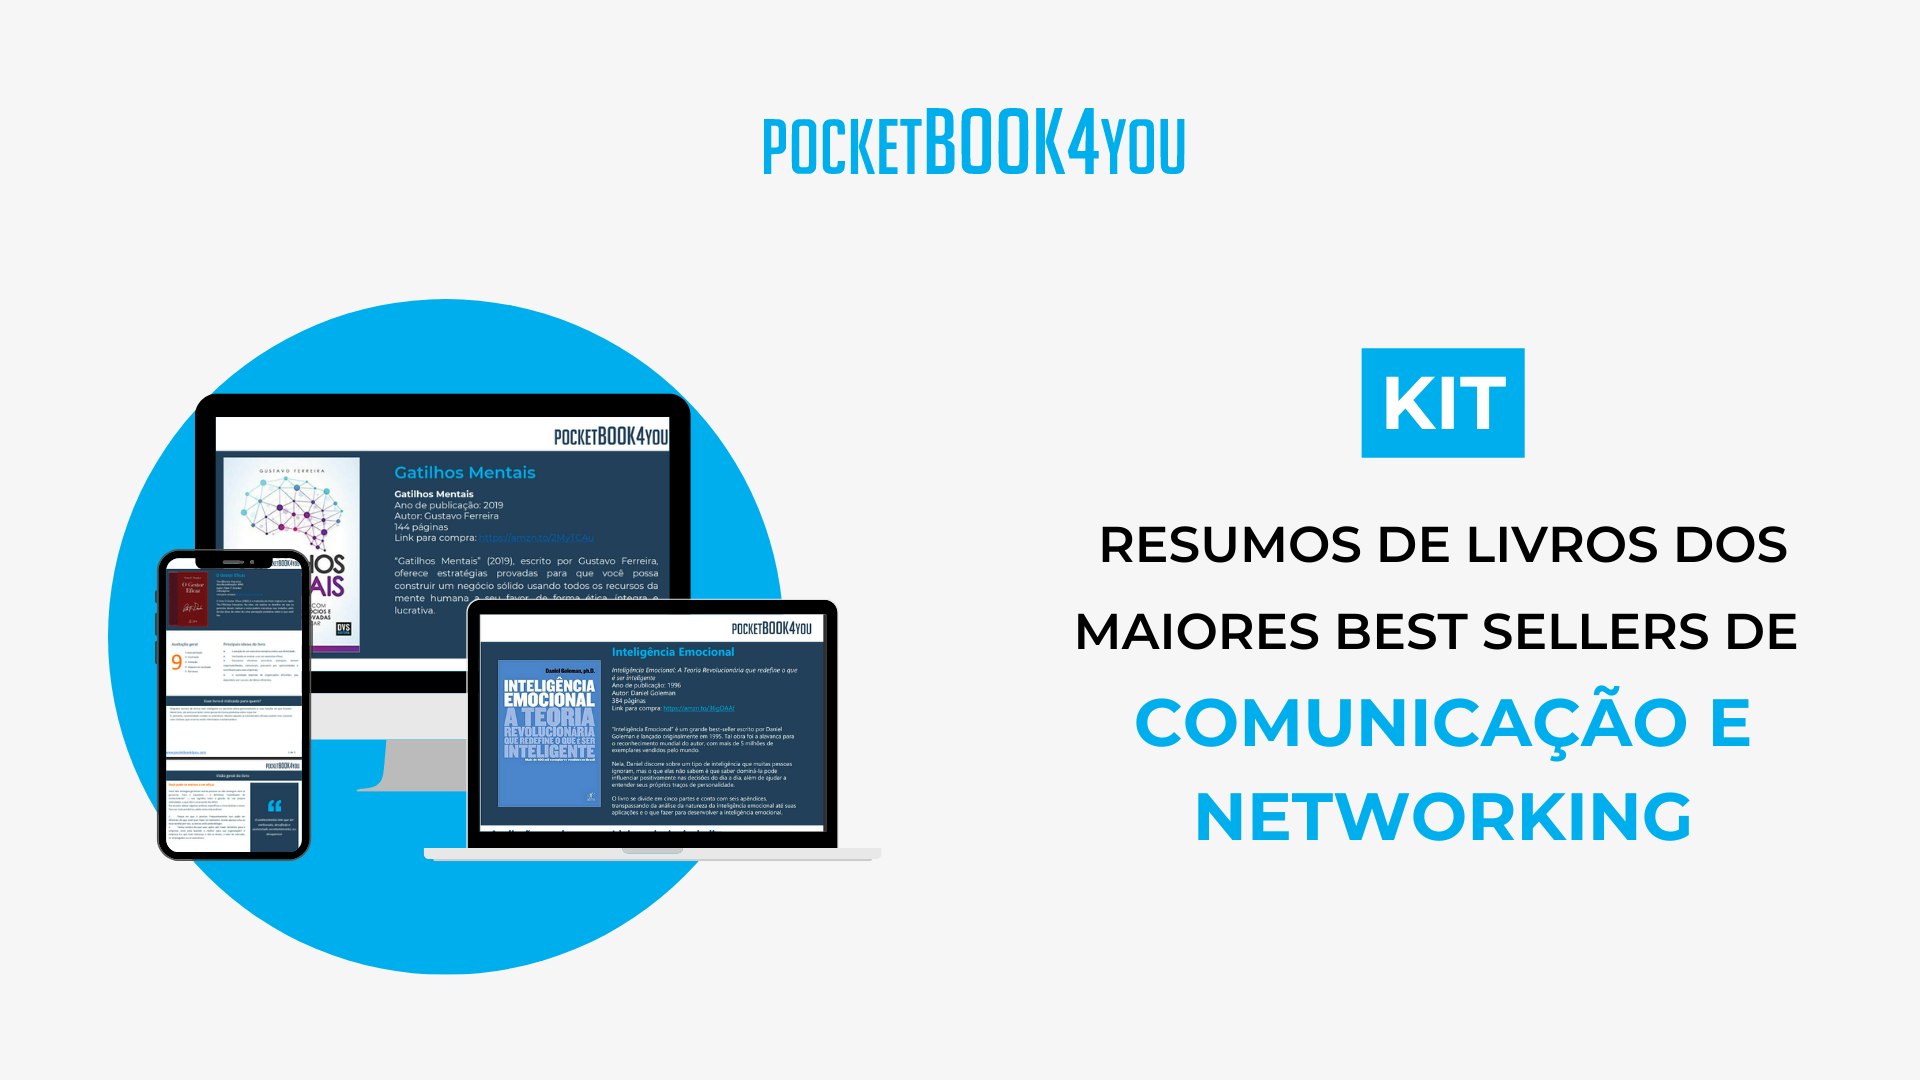 [KIT-POCKET] Comunicação e Networking